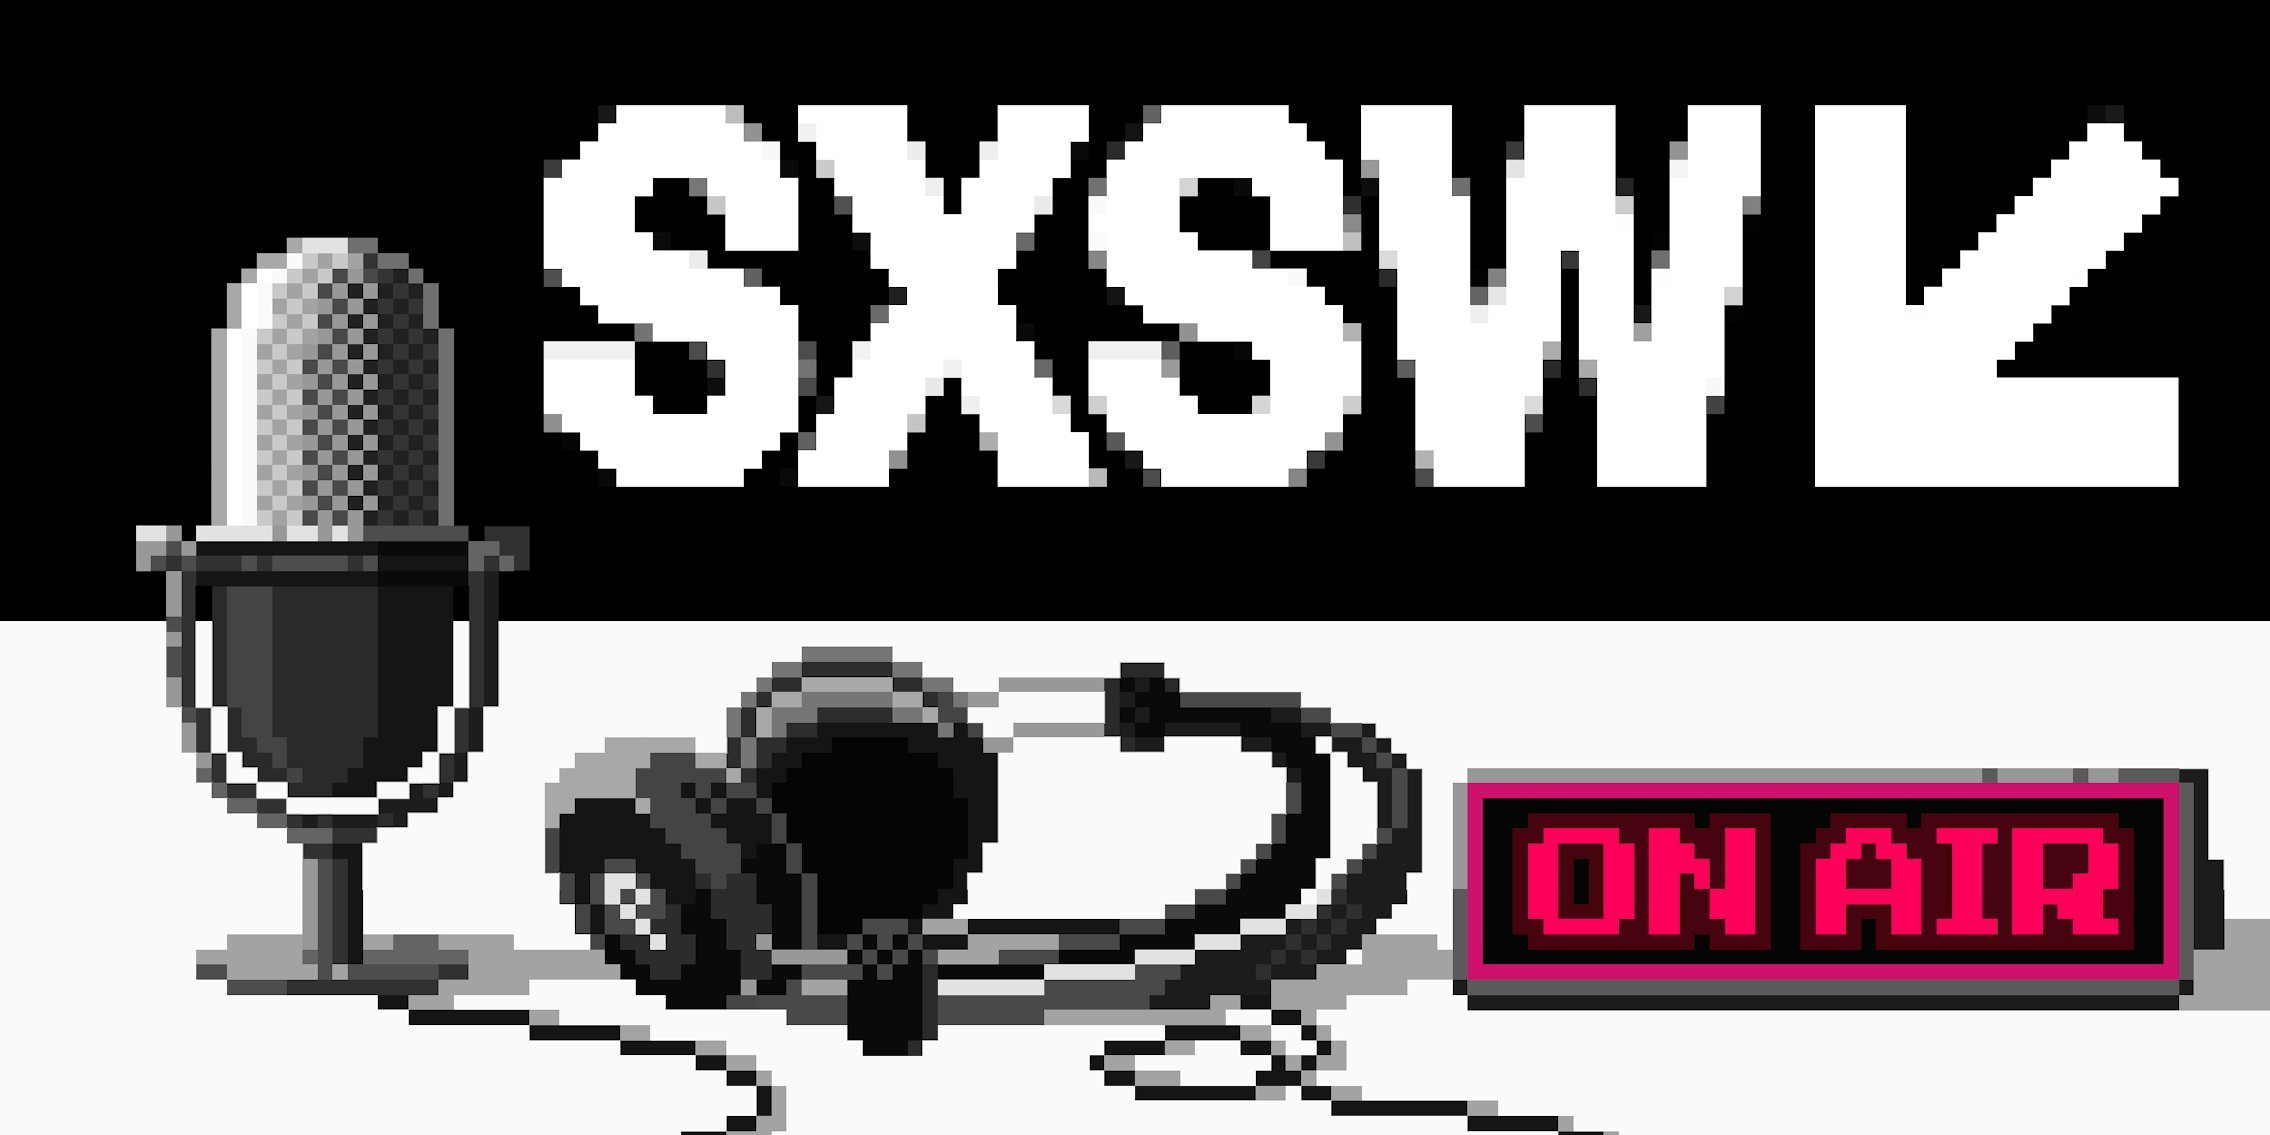 Upstream podcast discusses SXSW